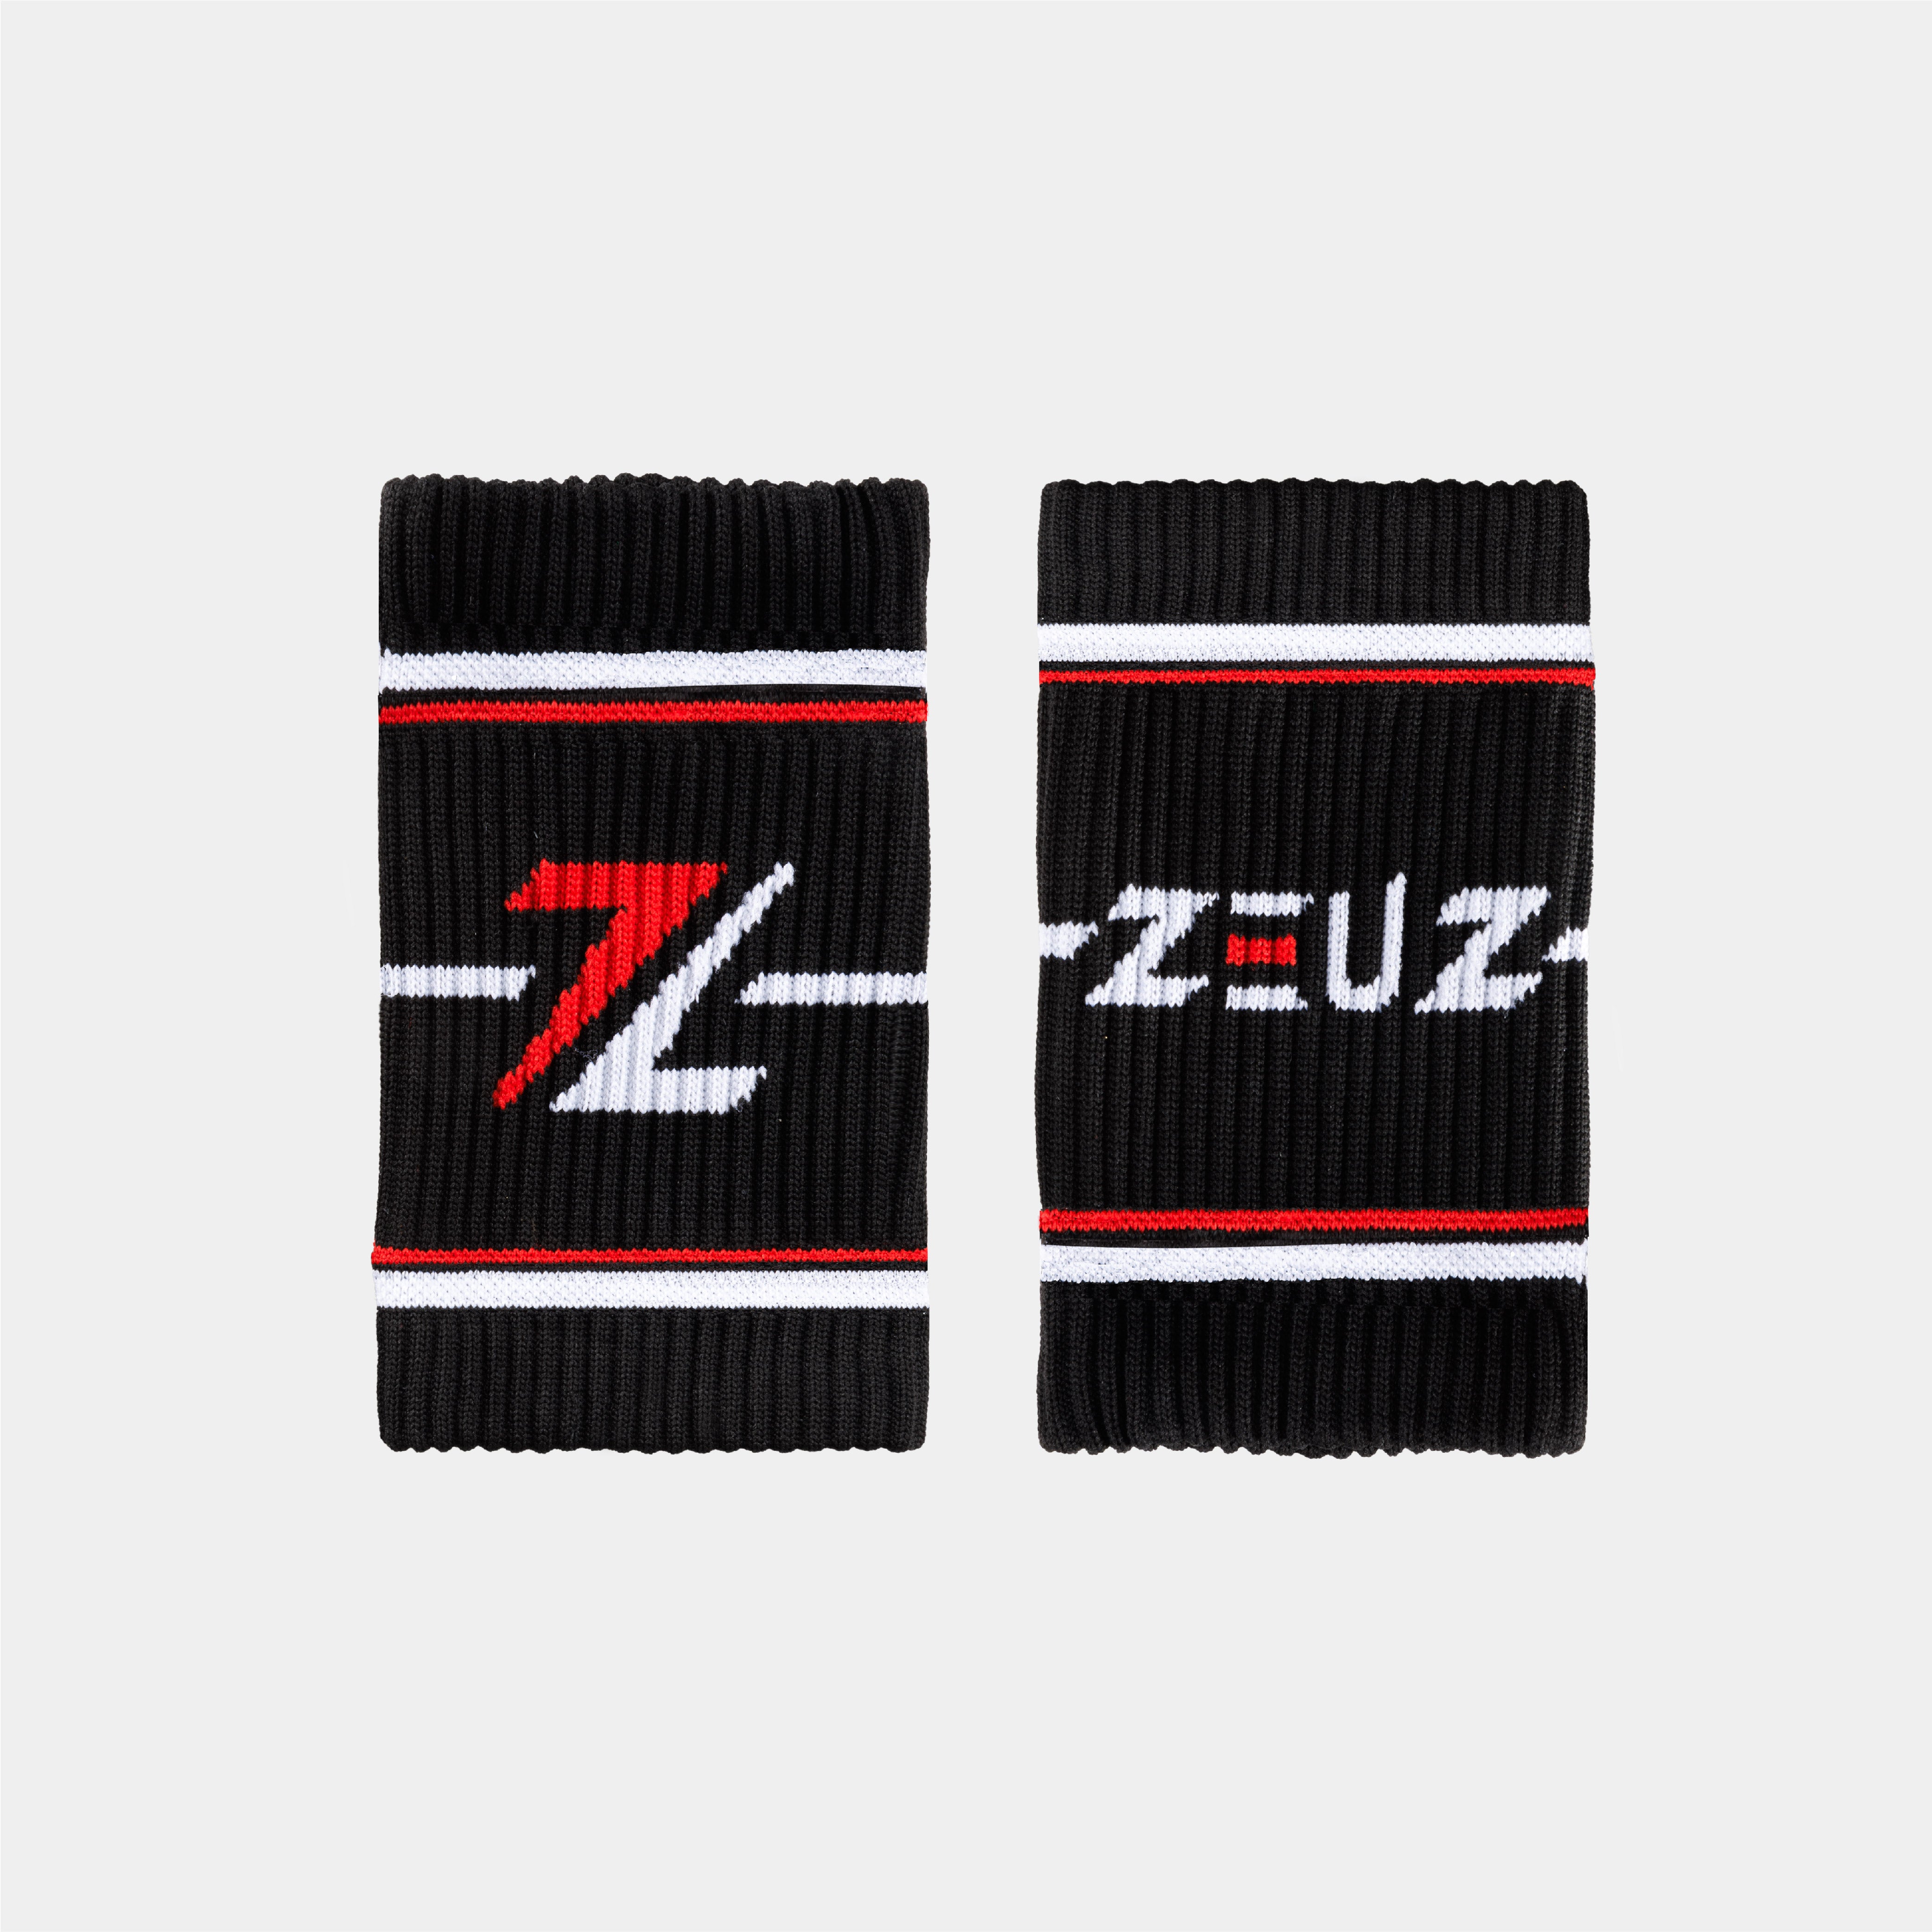 ZEUZ Sweat Bands - Wrist